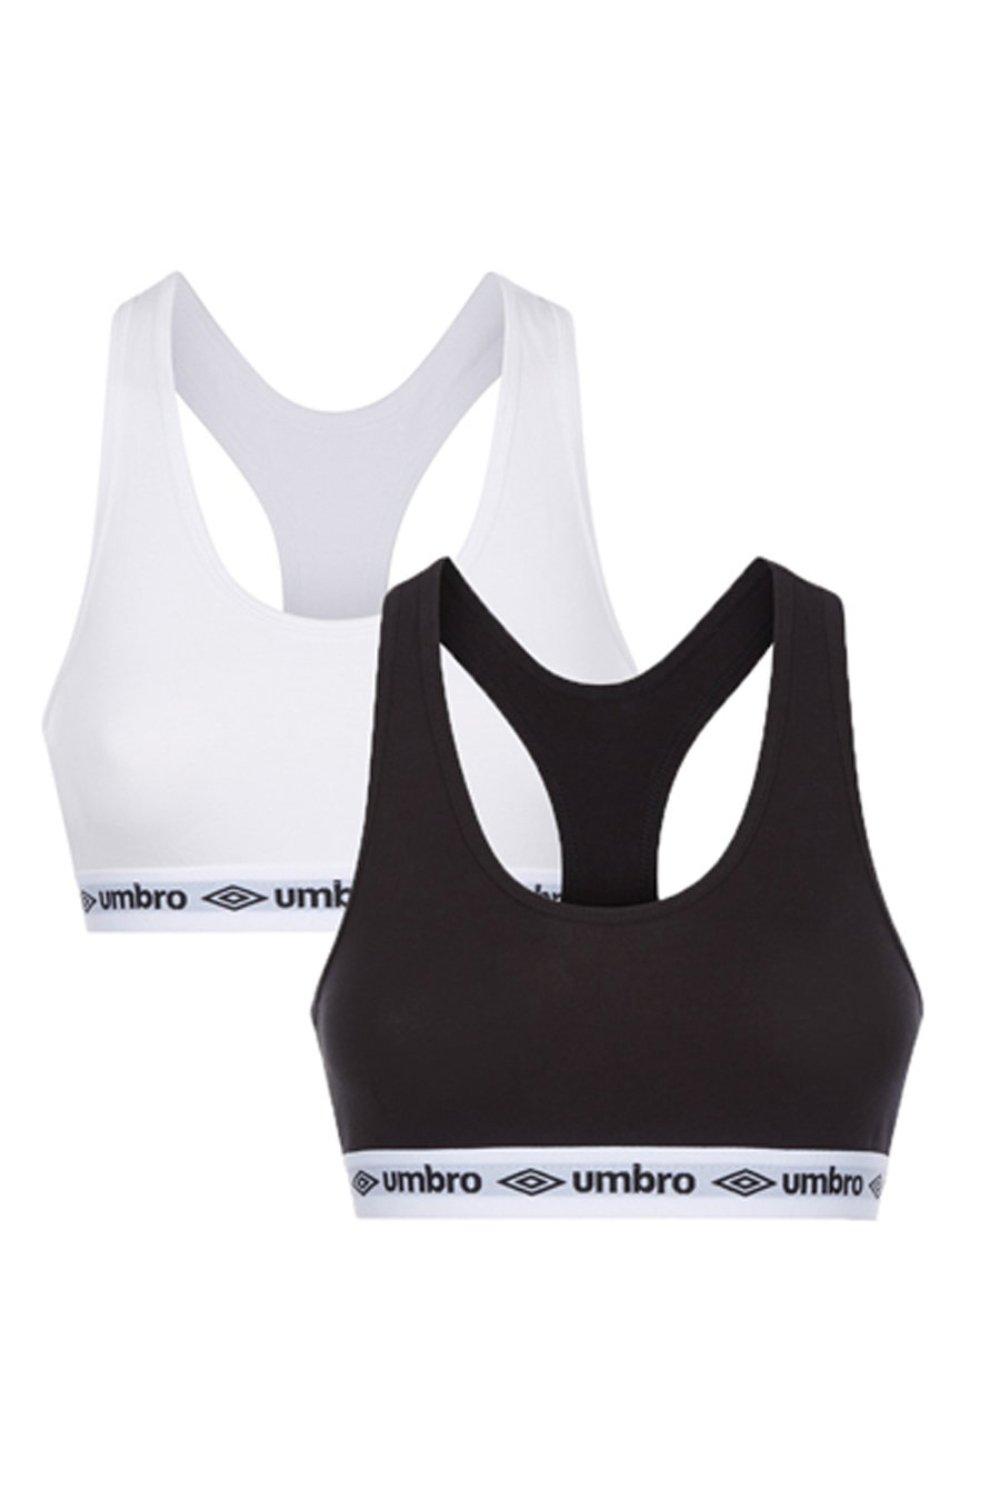 Buy Umbro Womens Two Pack Bra Tops Black/White